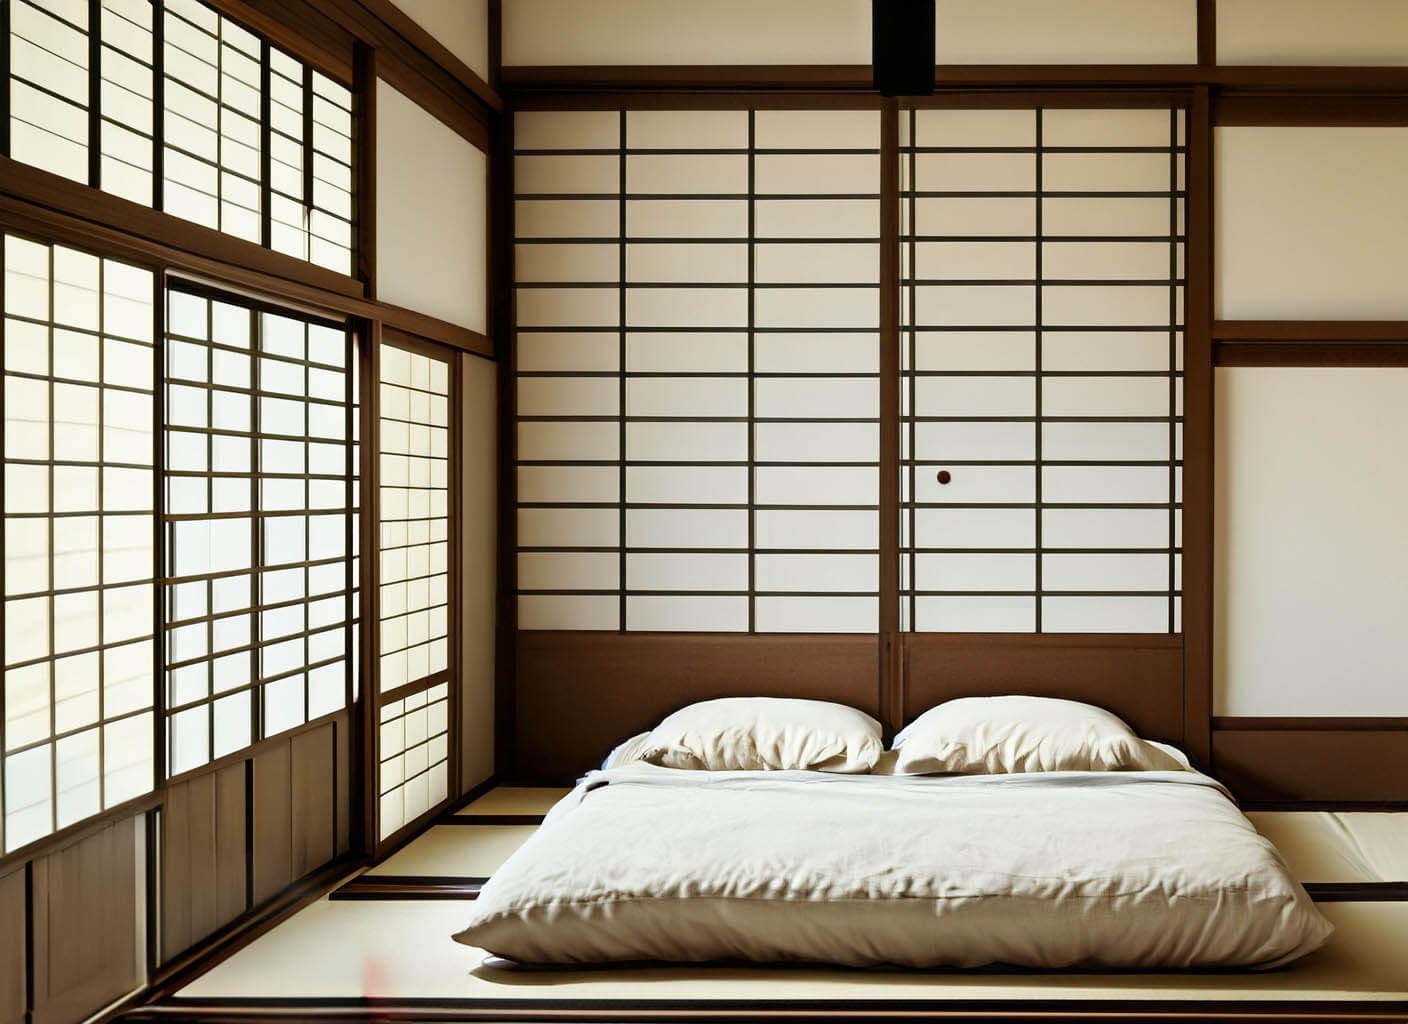 Tại sao người Nhật không ngủ giường mà thích trên sàn nhà.